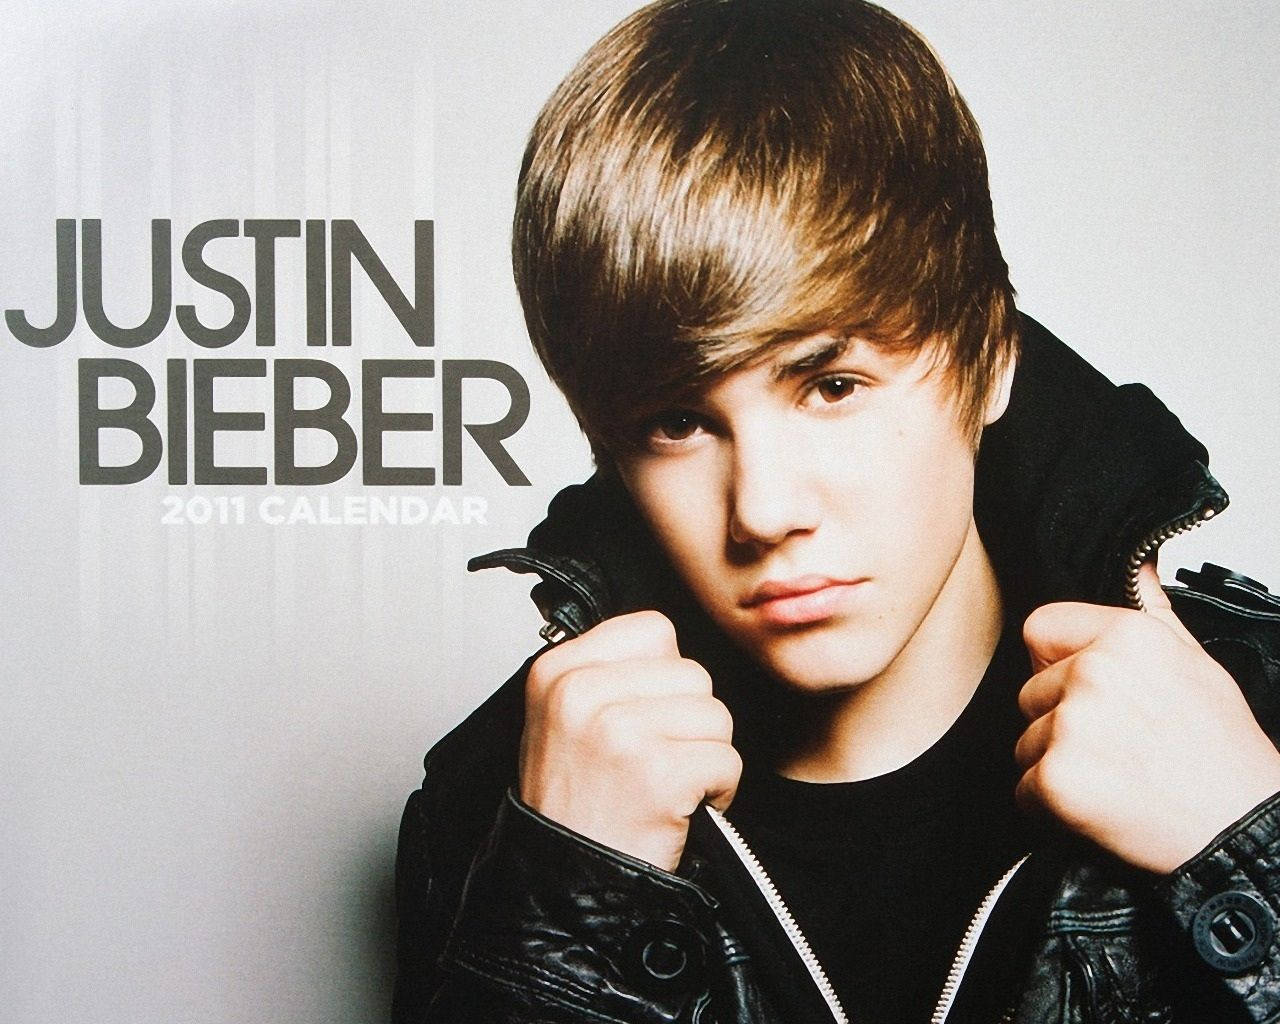 Justin Bieber 2011 Calendar Cover